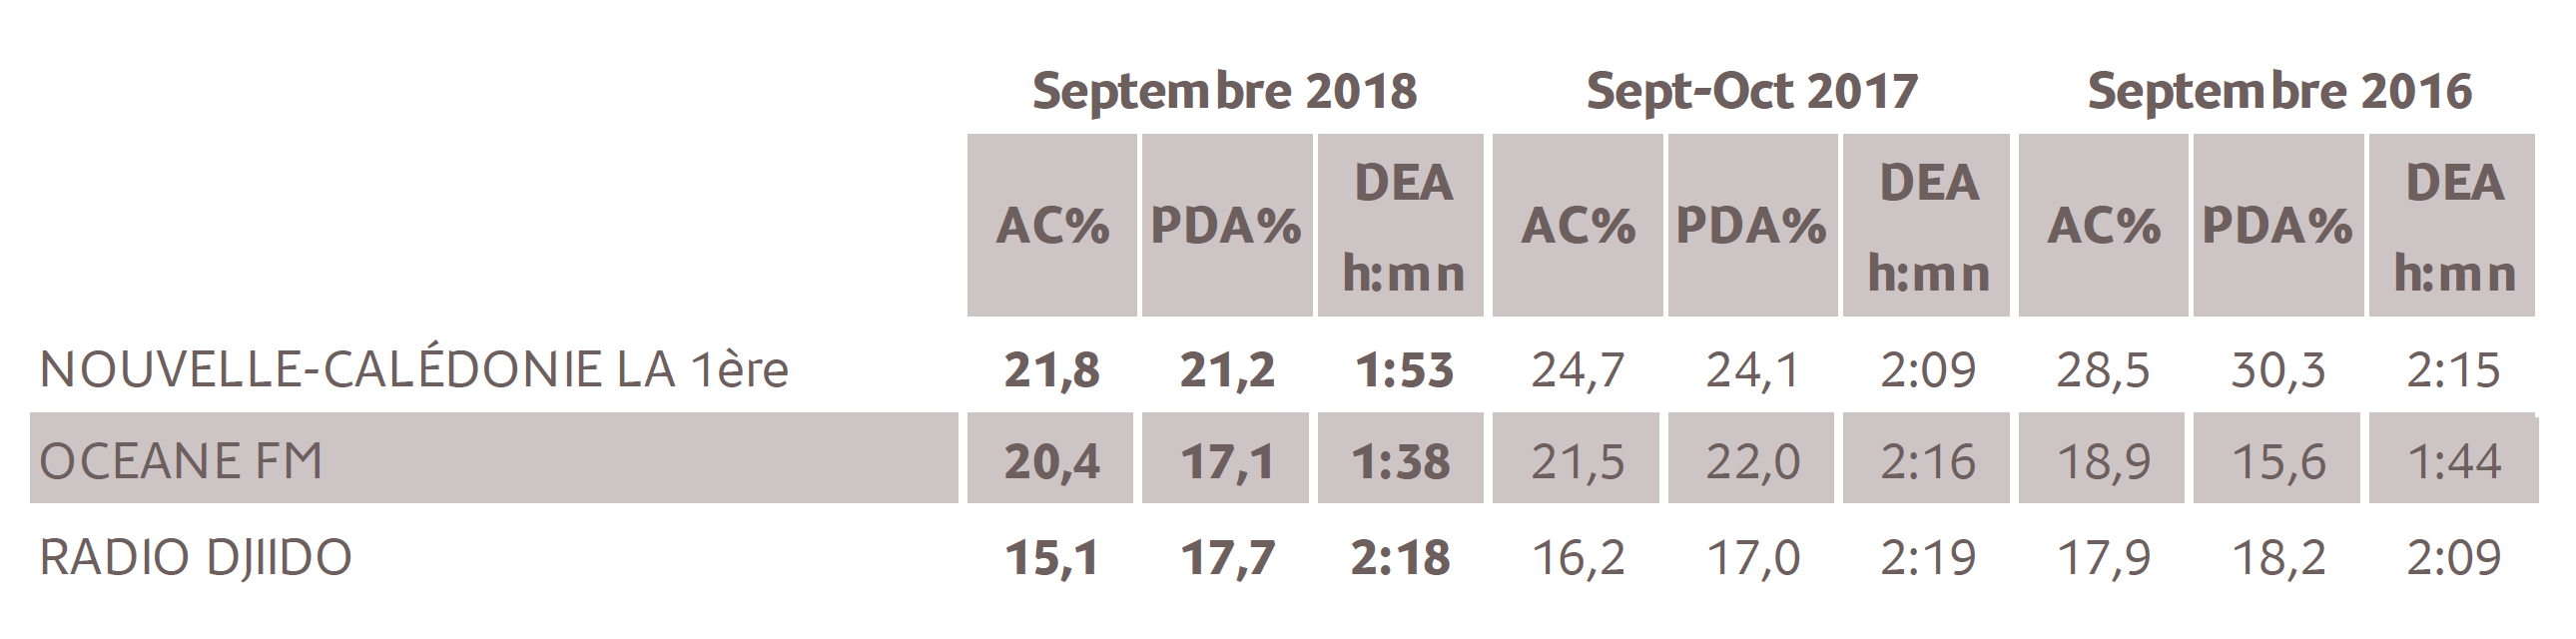 Source : Médiamétrie - Etude Nouvelle-Calédonie – Septembre 2018 - 13 ans et plus - Copyright Médiamétrie - Tous droits réservés